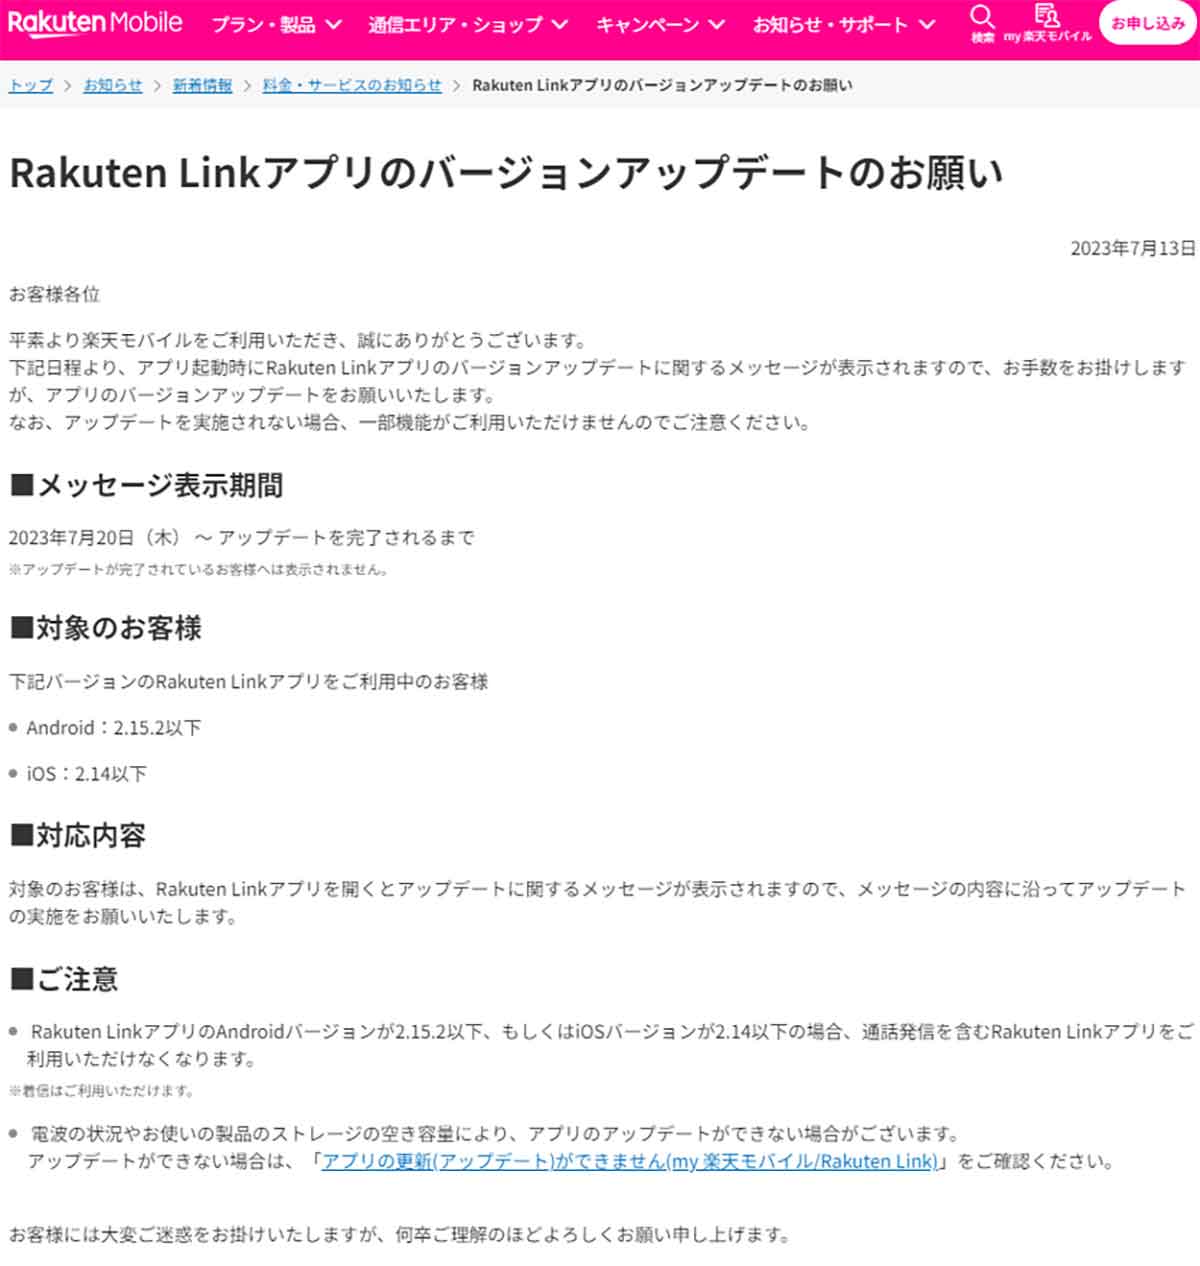 Rakuten Linkアプリのバージョンアップデートのお願い